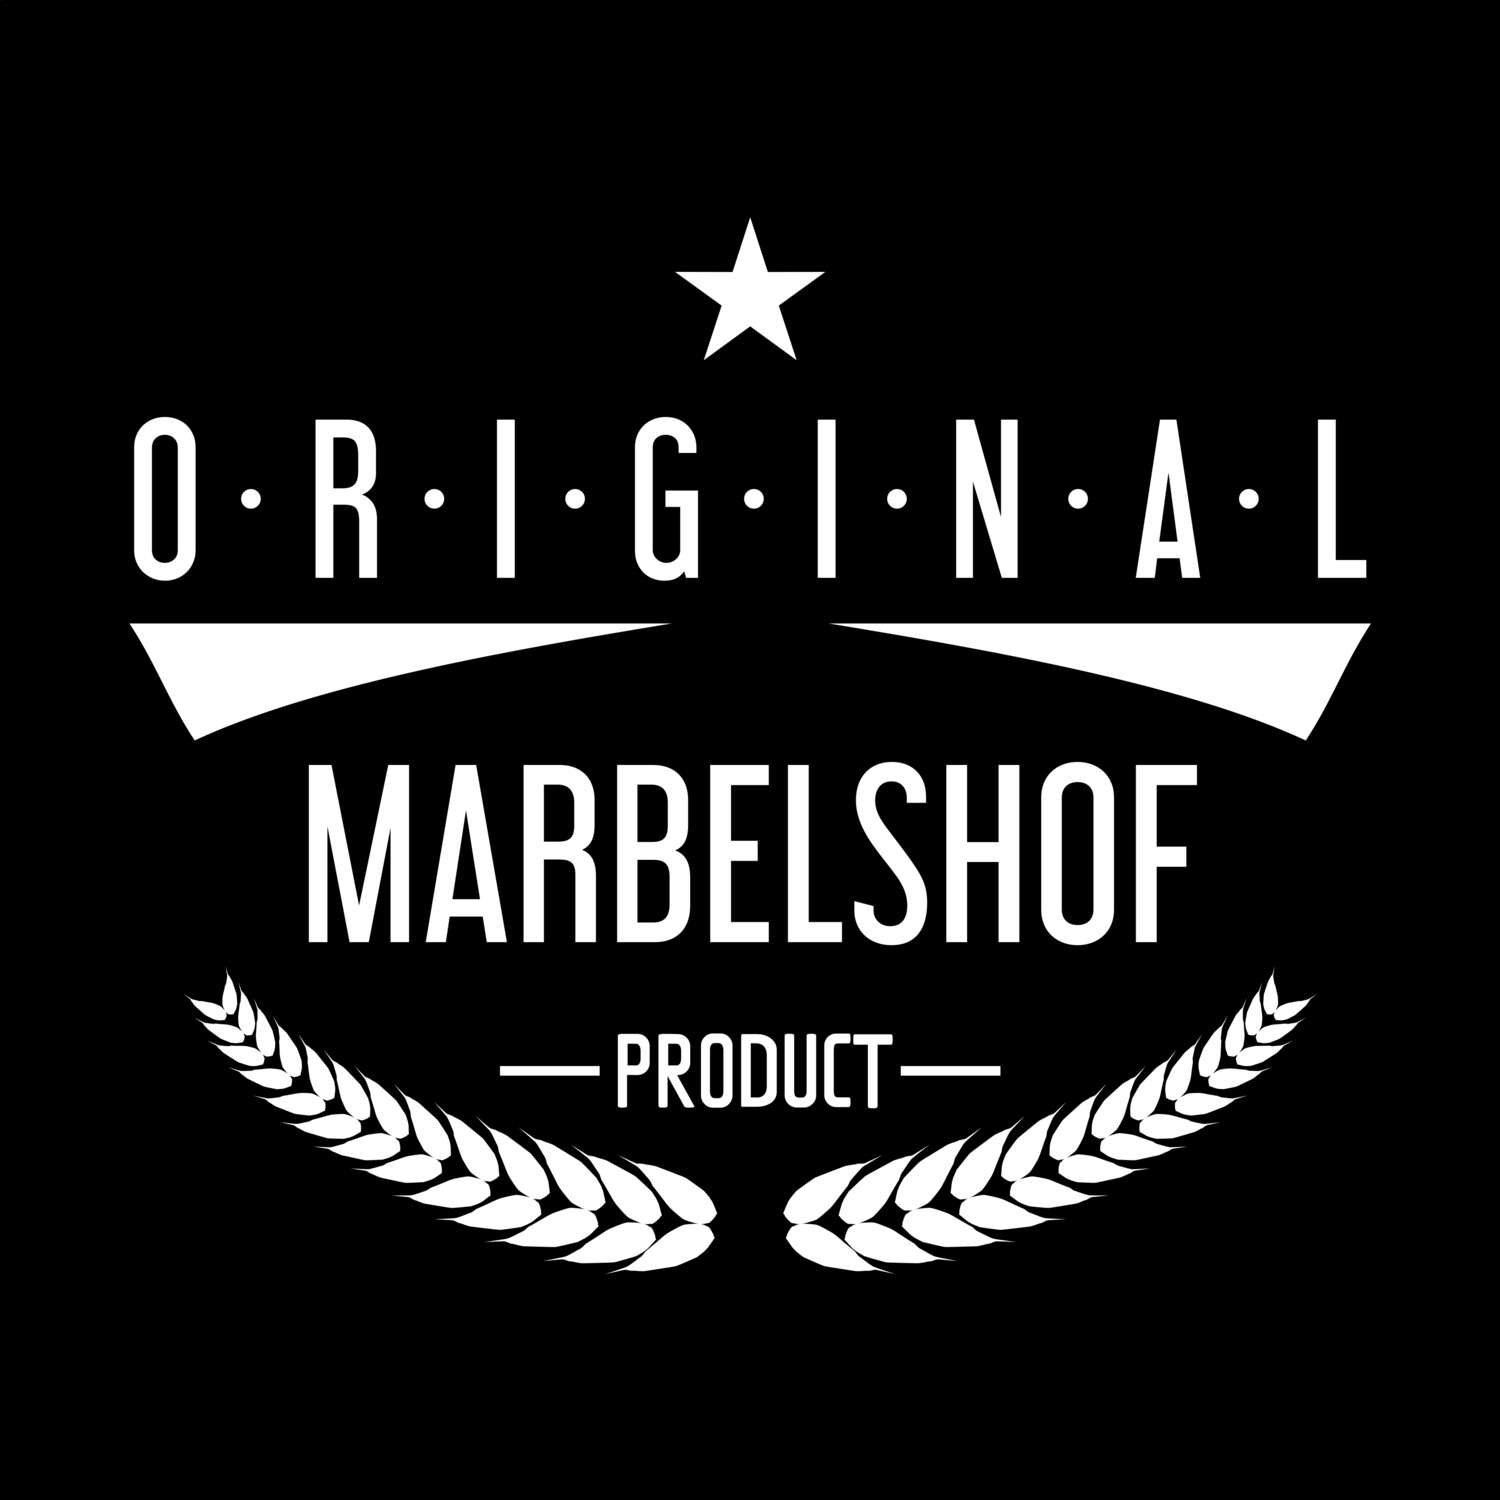 Marbelshof T-Shirt »Original Product«